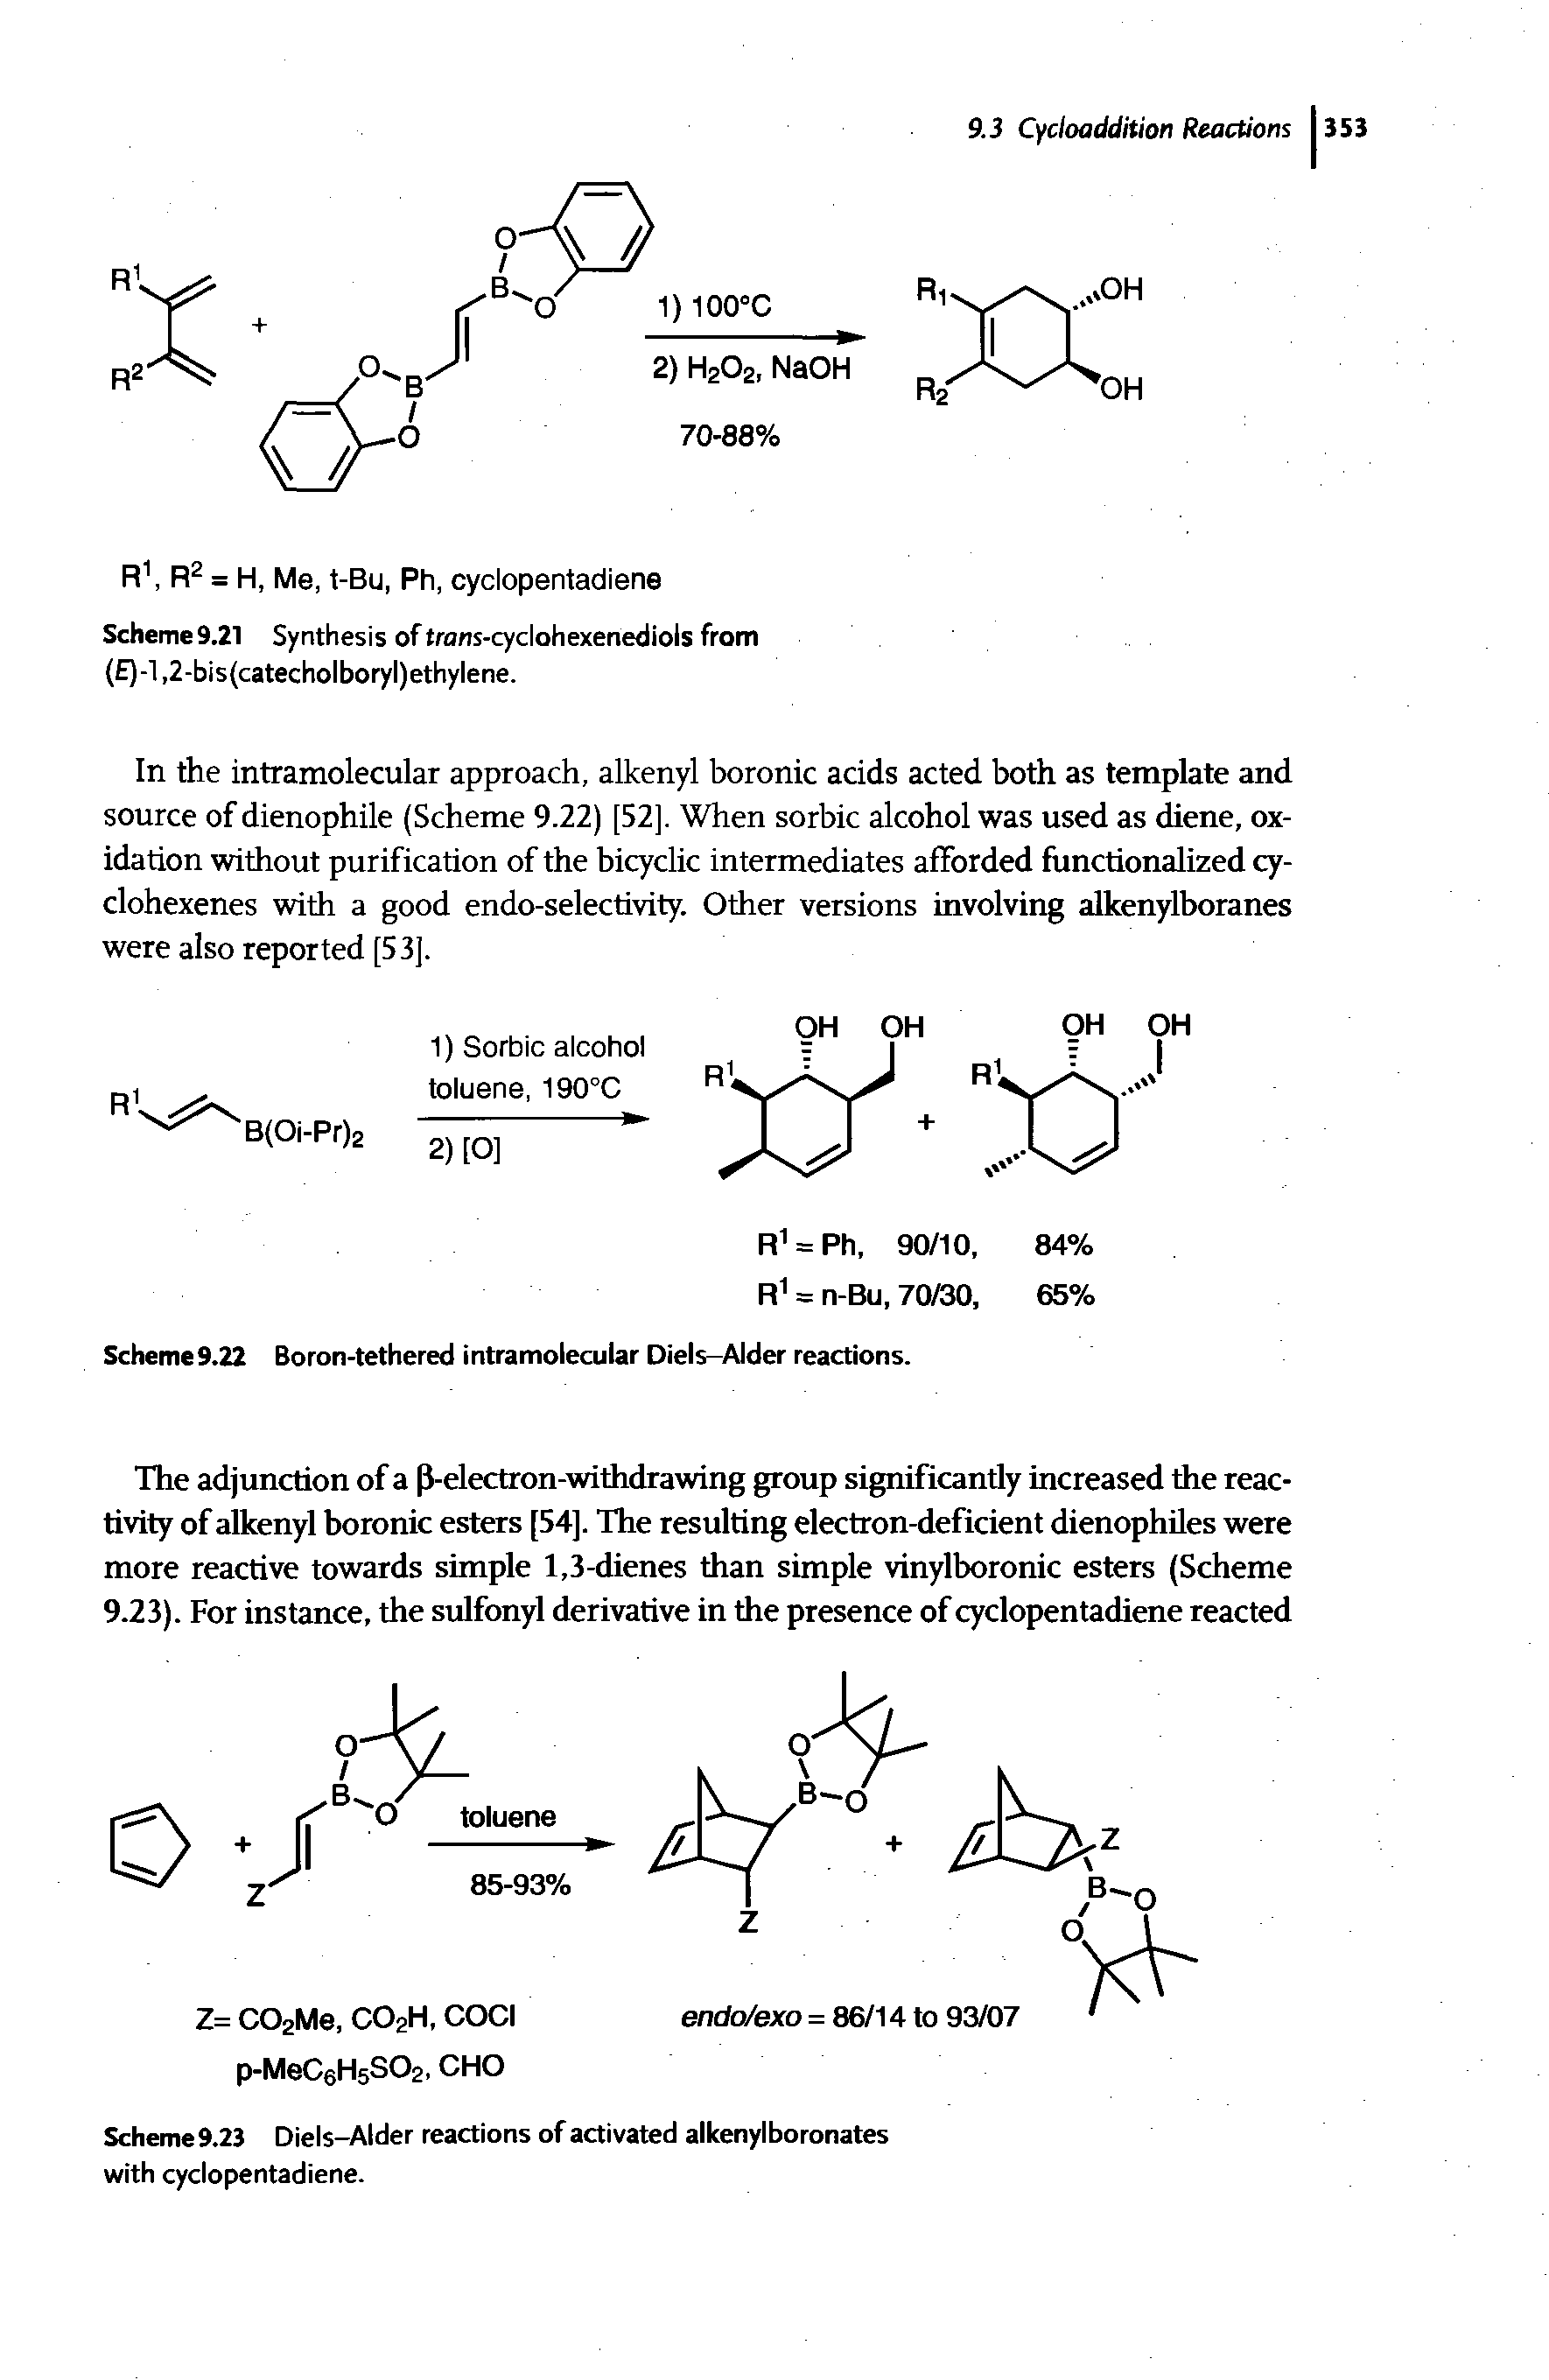 Schemc9.22 Boron-tethered intramolecular Diels-Alder reactions.